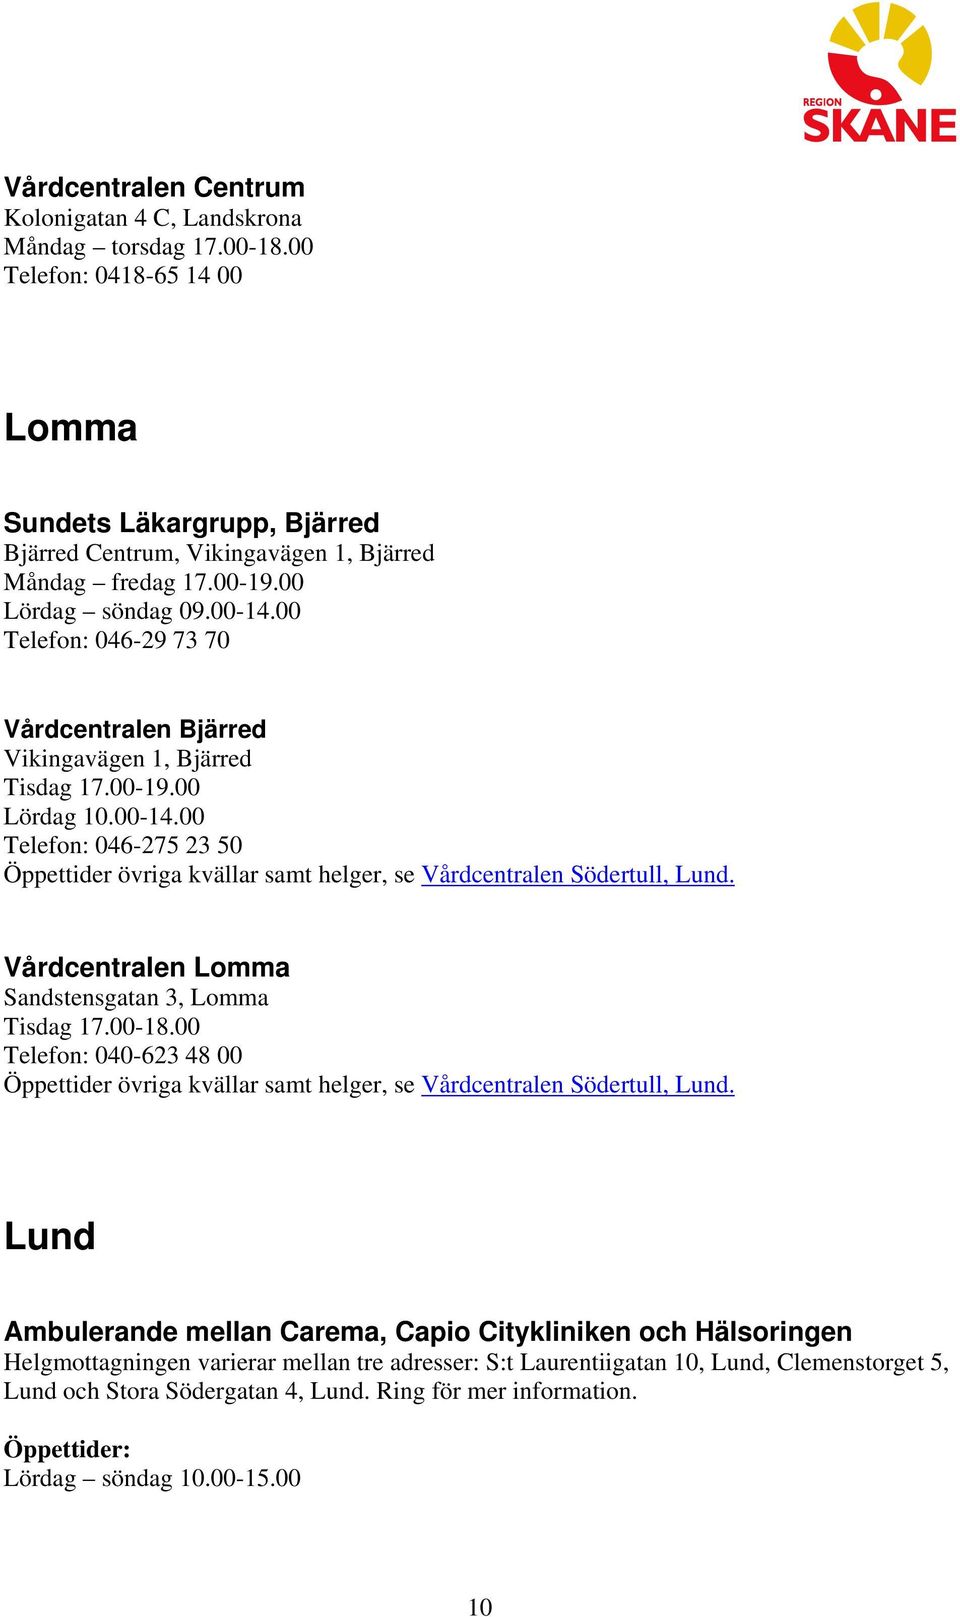 Vårdcentralen Lomma Sandstensgatan 3, Lomma Tisdag 17.00-18.00 040-623 48 00 Öppettider övriga kvällar samt helger, se Vårdcentralen Södertull, Lund.